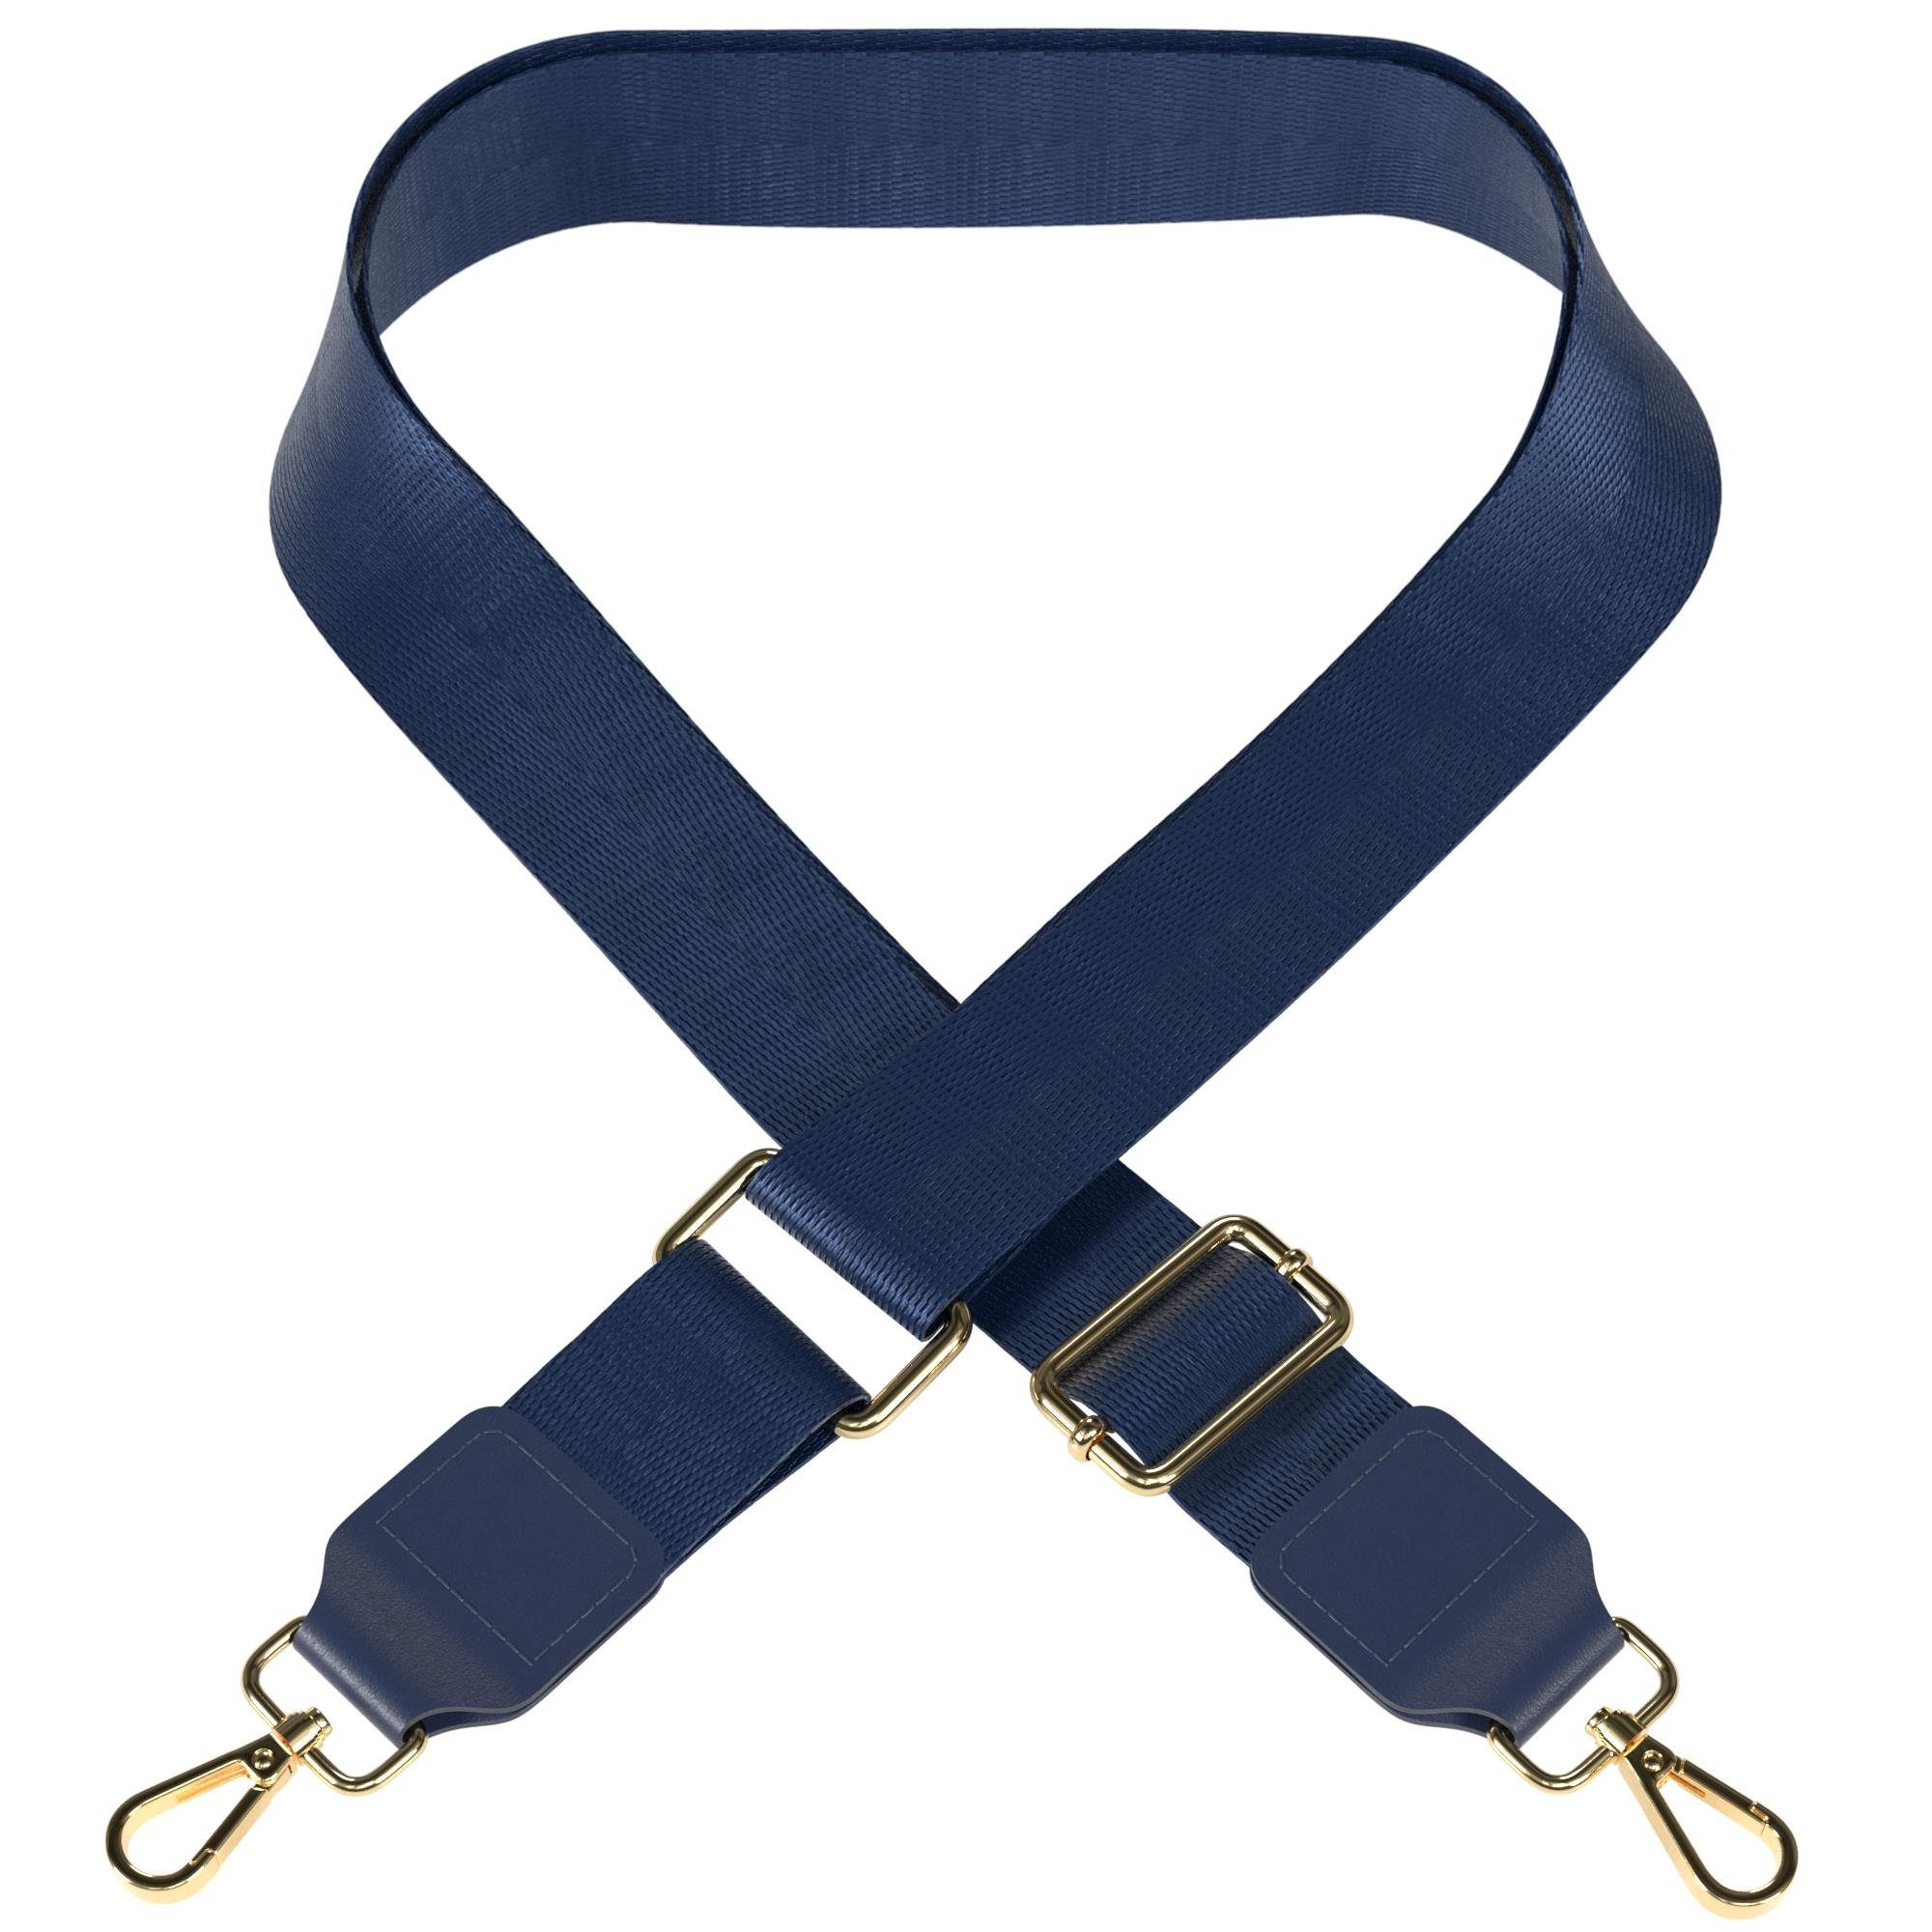 EAZY CASE Schulterriemen Schultergurte für Taschen unifarbend Body Bag Riemchen Wechselband Ersatzgurt mit Karabiner Verschluss Blau Dunkelblau - Metall Gold